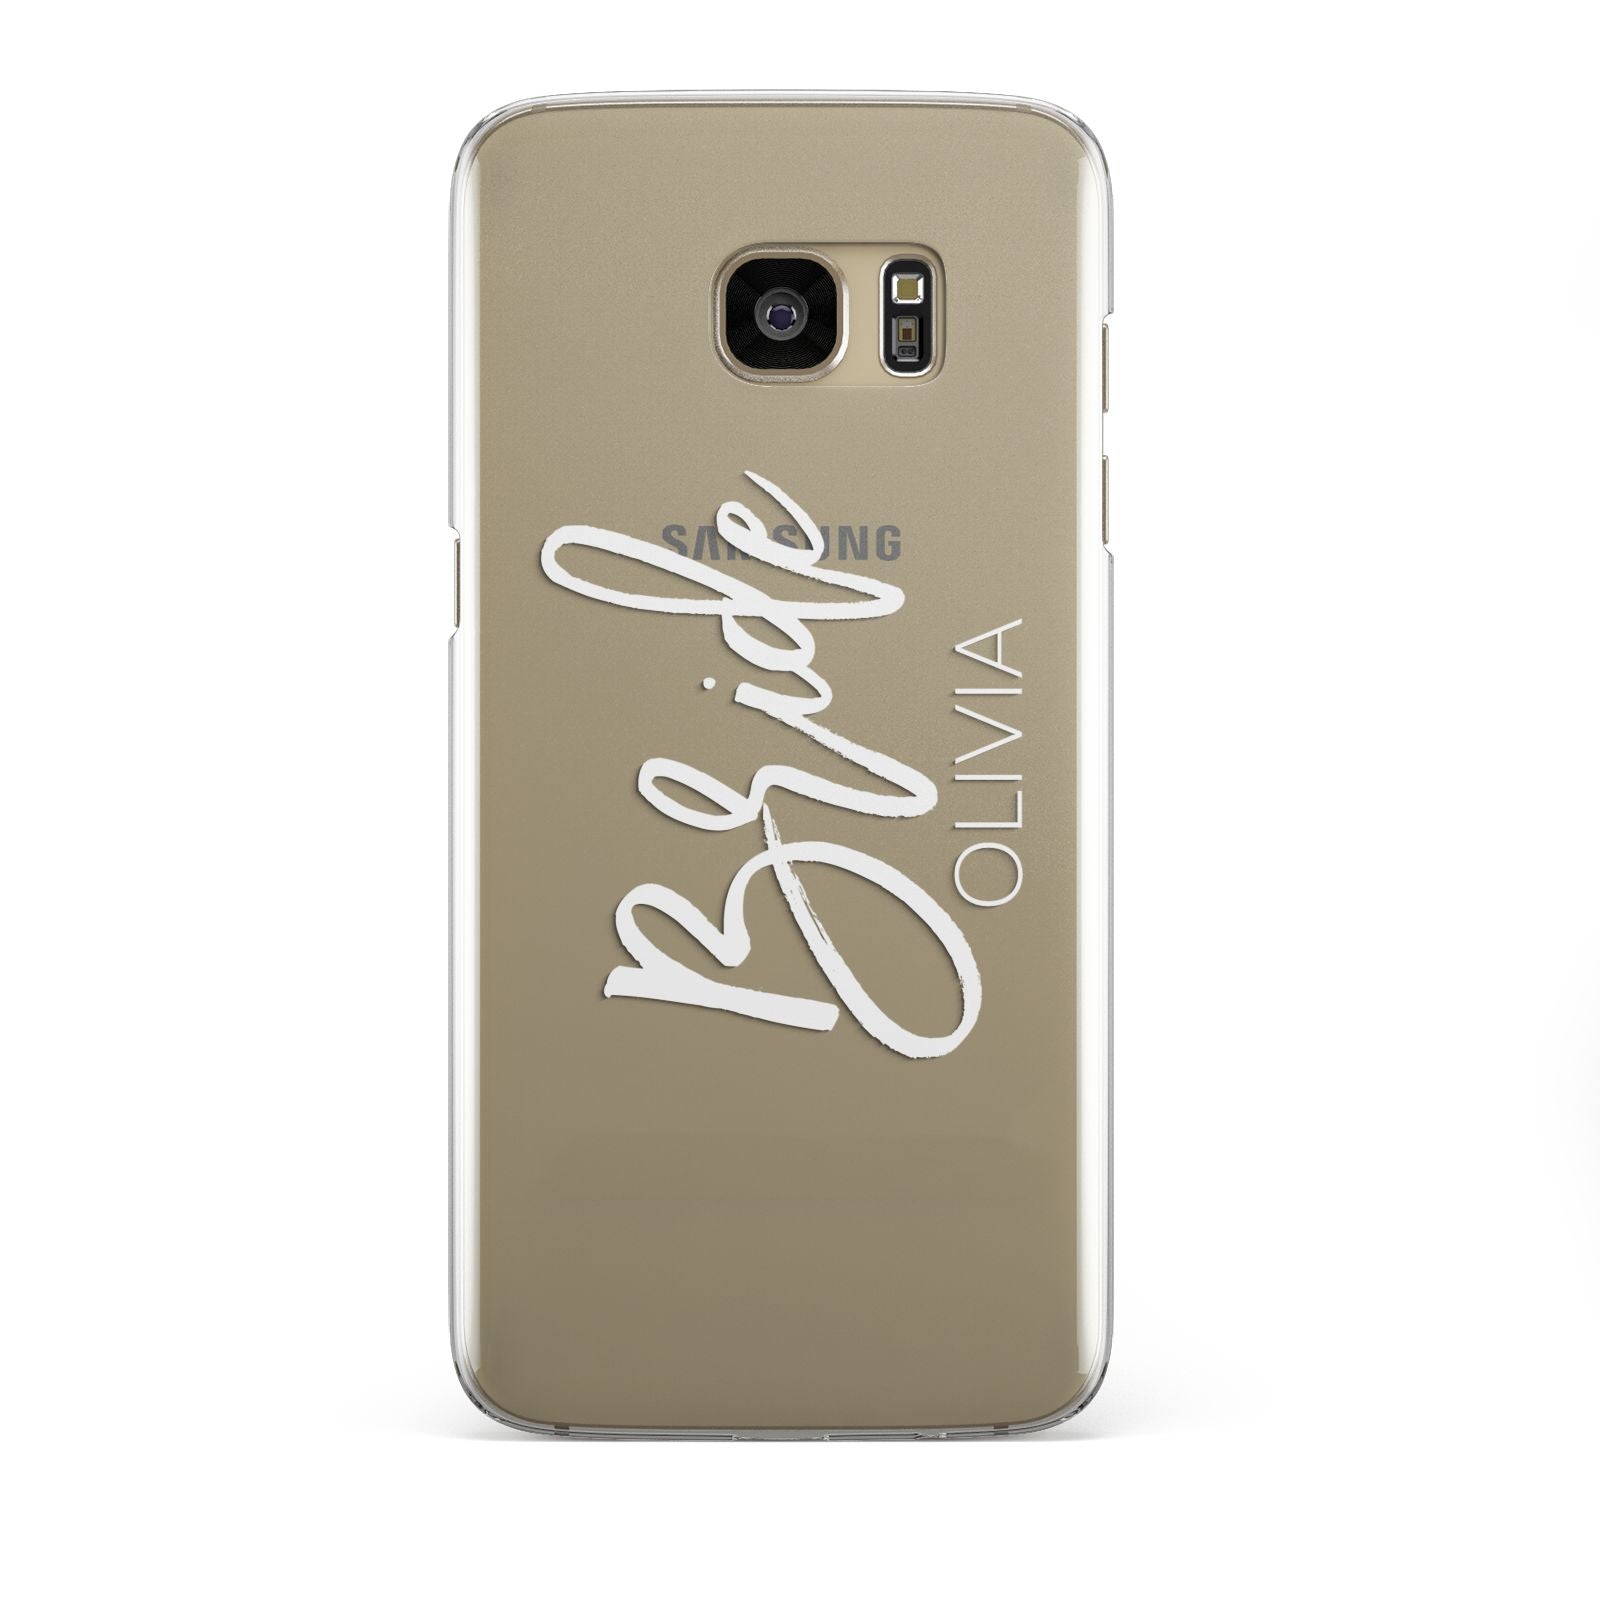 Personalised Bride Samsung Galaxy S7 Edge Case